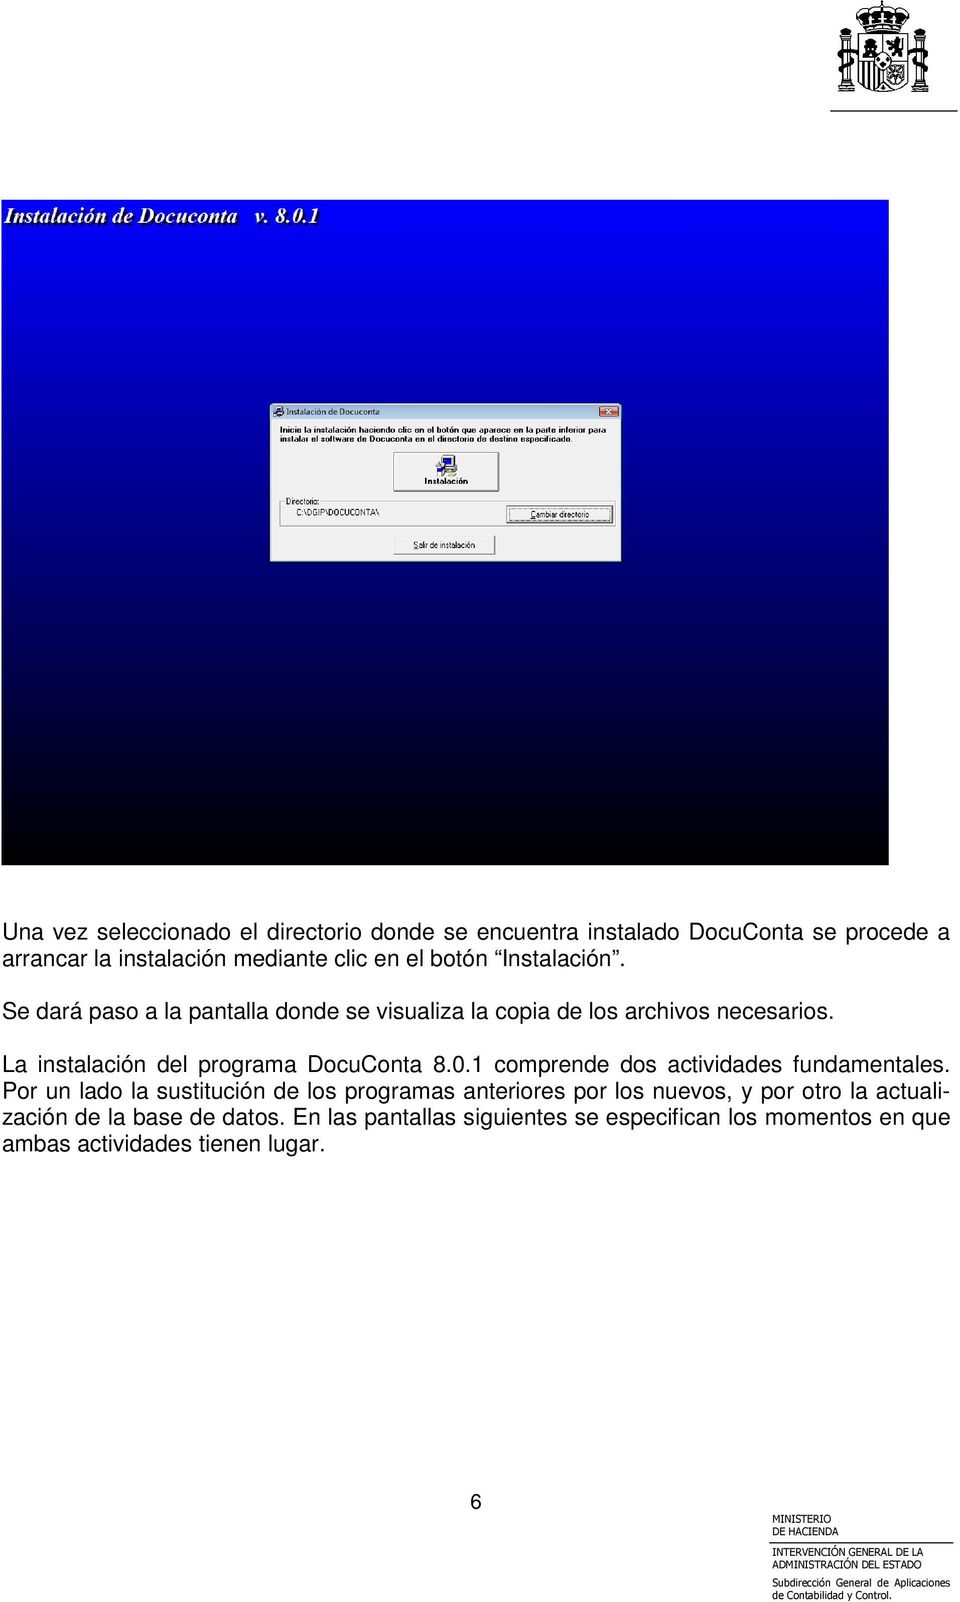 La instalación del programa DocuConta 8.0.1 comprende dos actividades fundamentales.